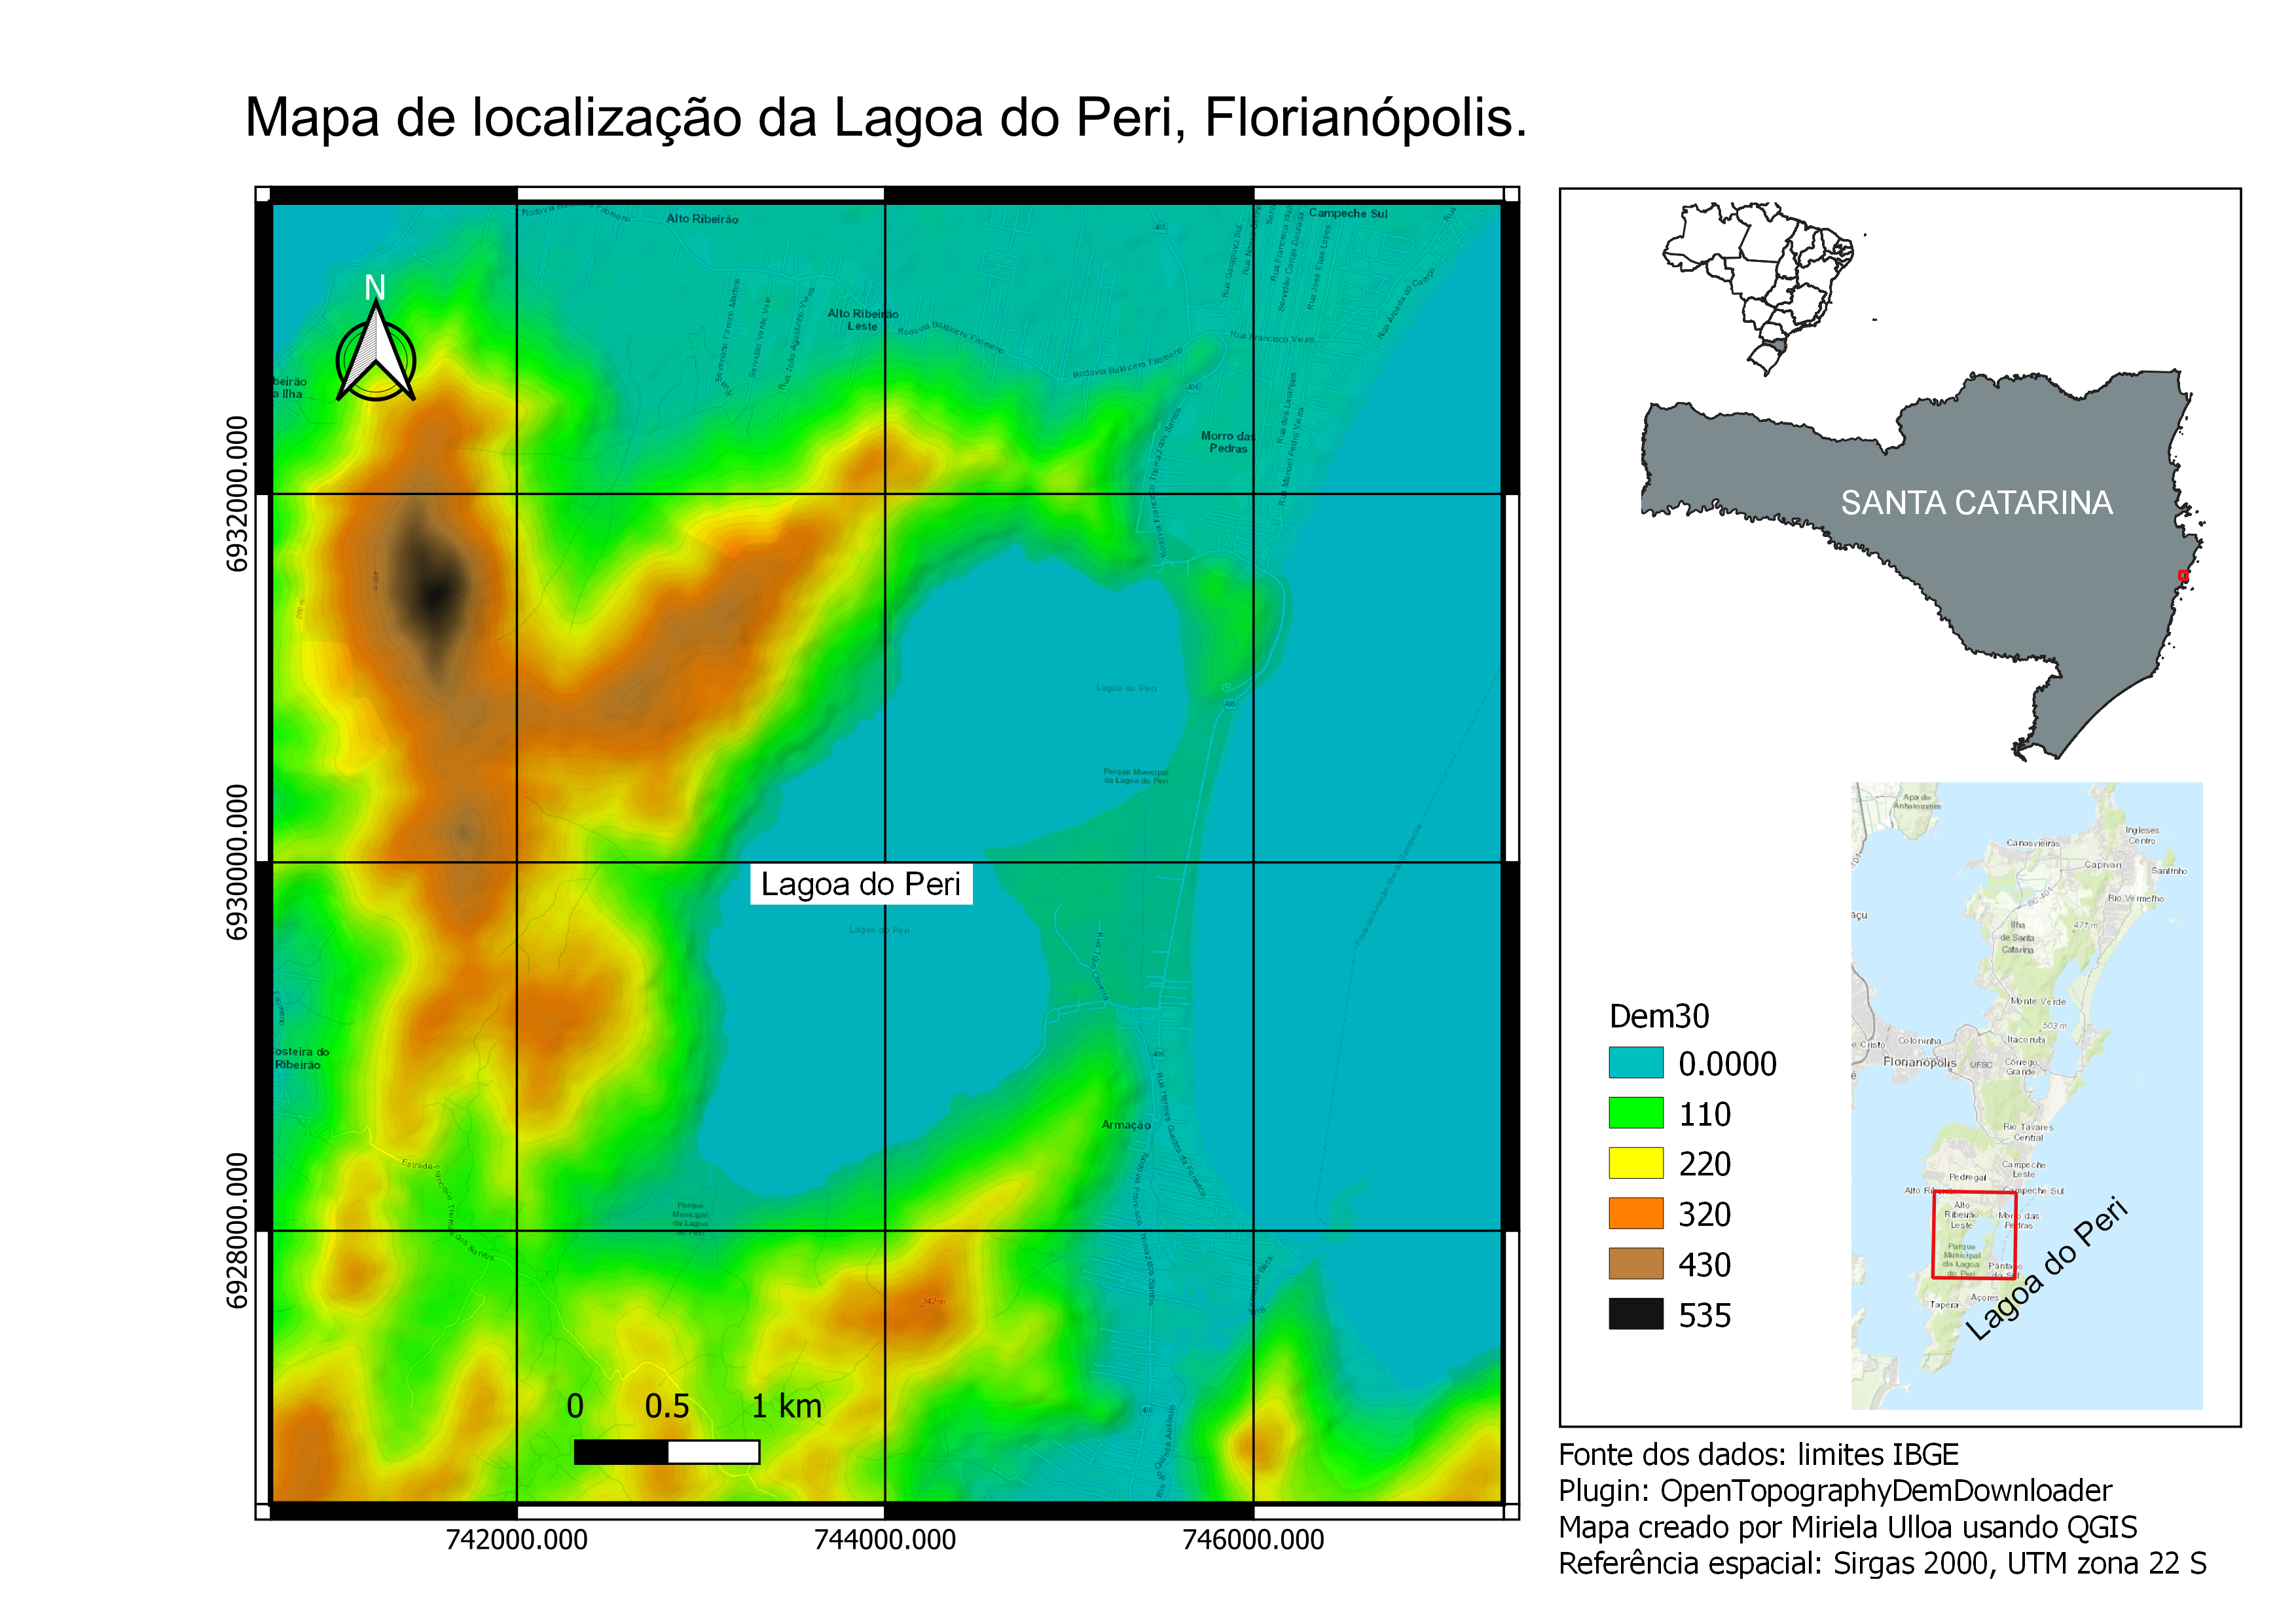 Mapa de localização da Lagoa do Peri.